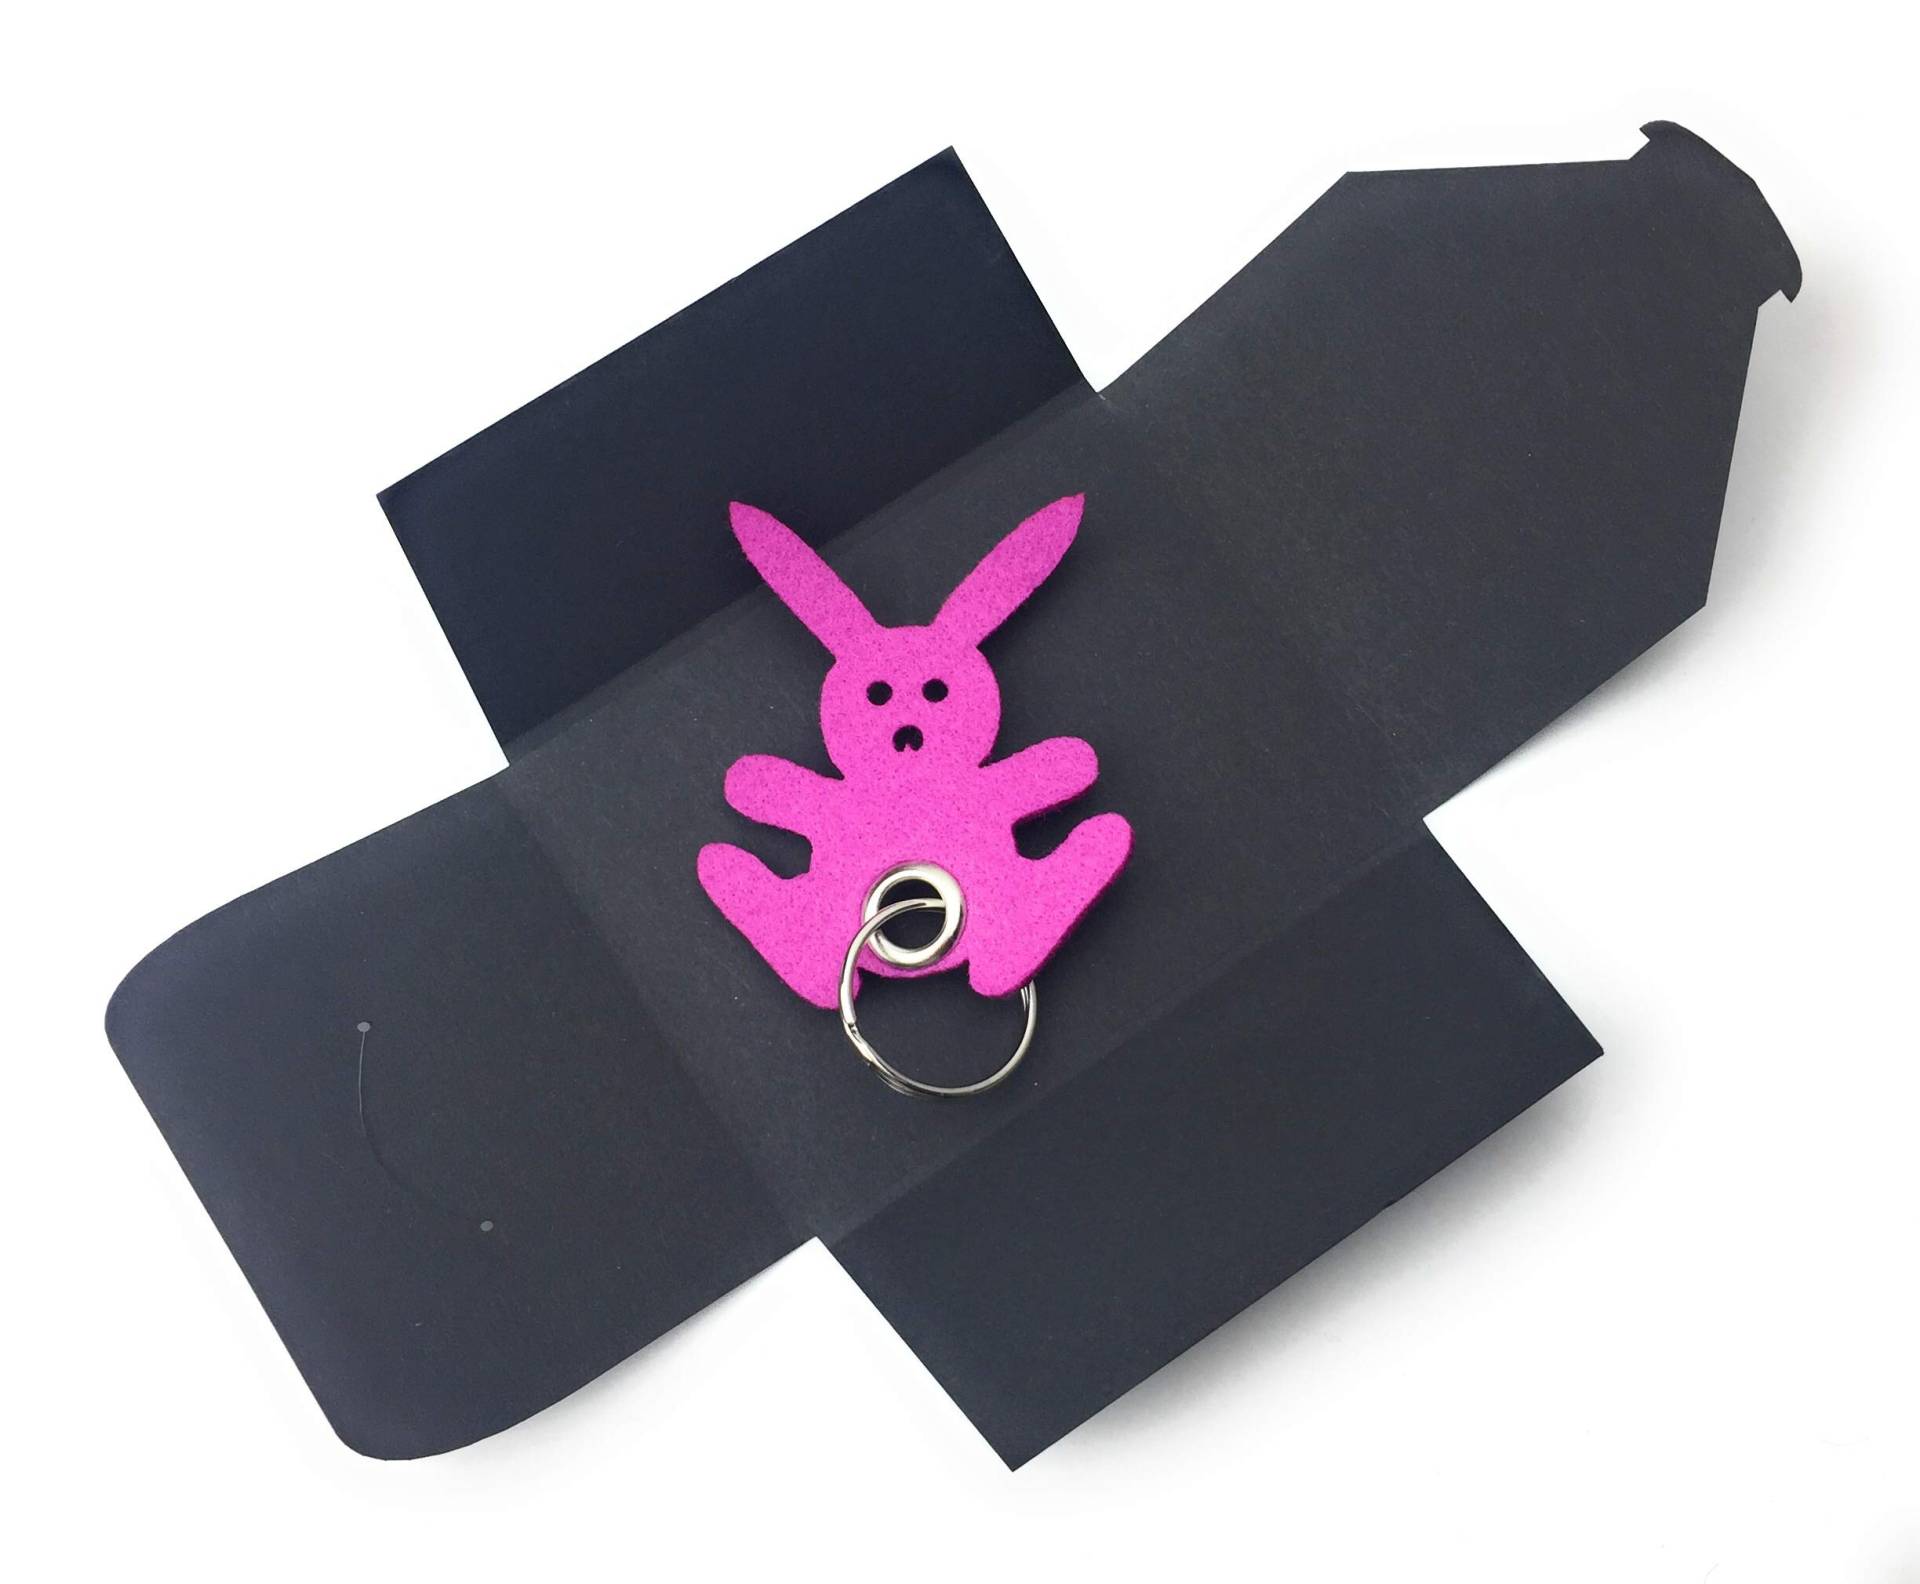 Schlüsselanhänger aus Filz - Hase - Freude/Ostern - Hase in pink - als besonderes Geschenk von filzschneider